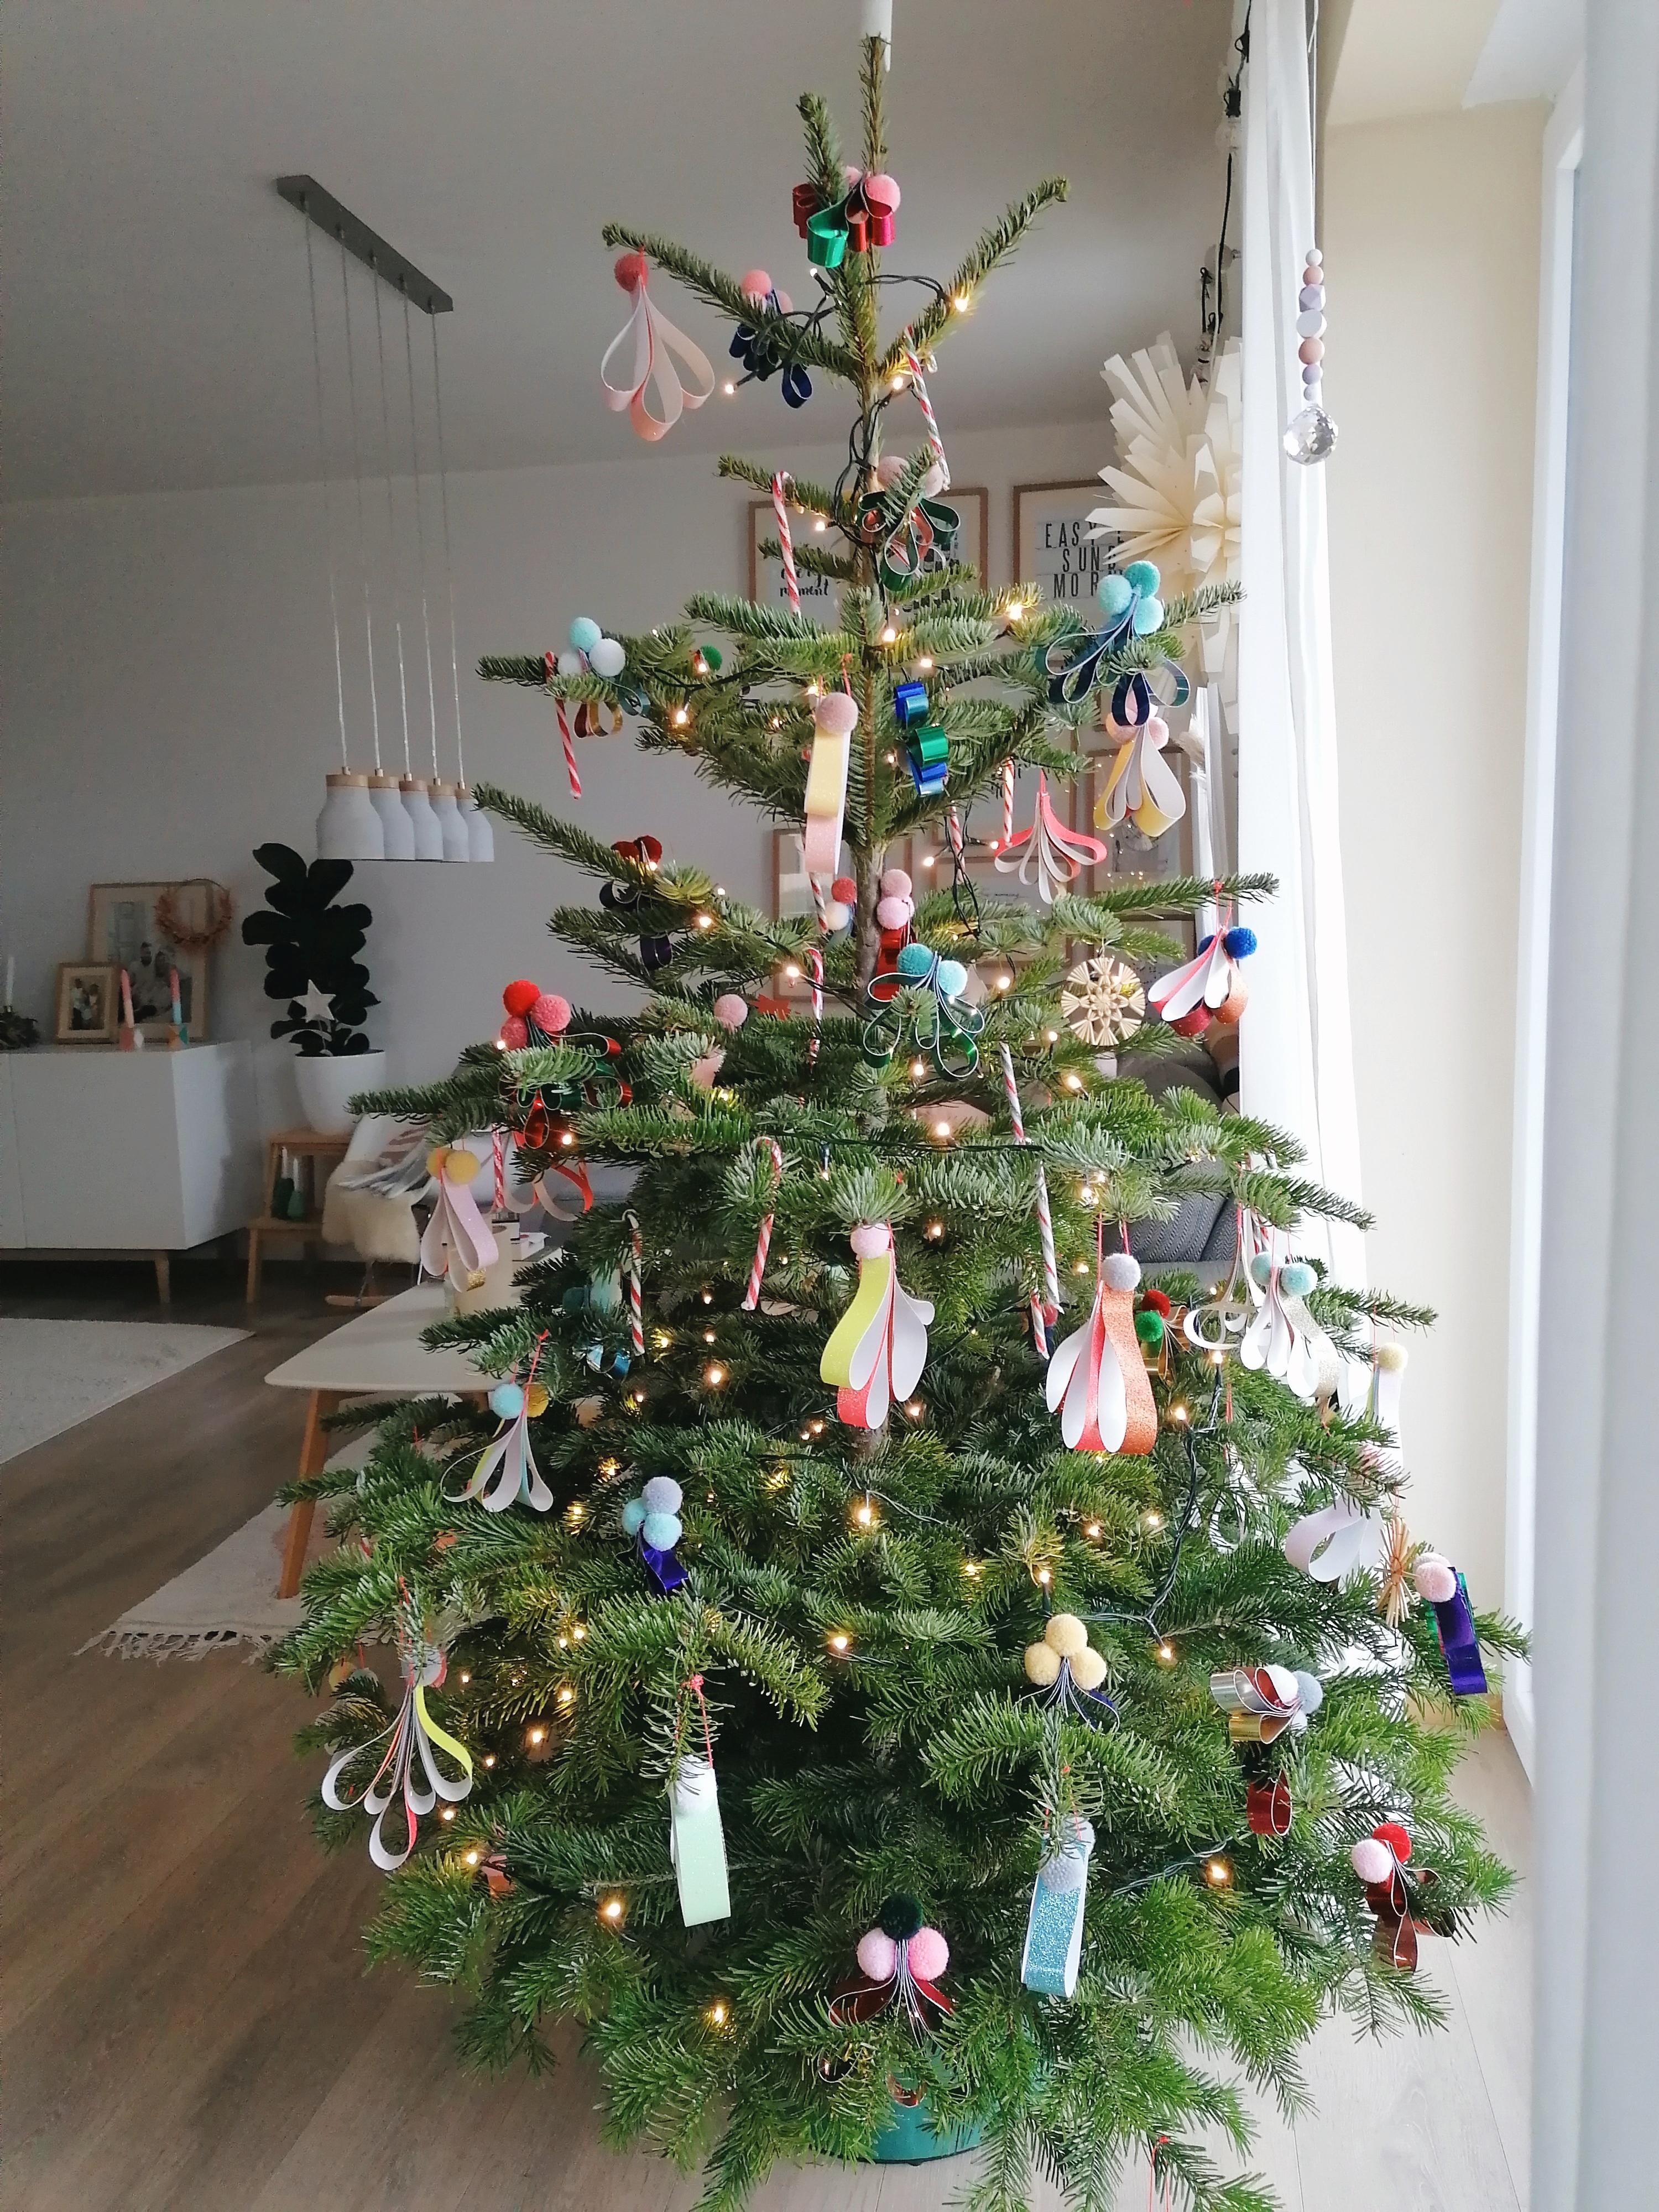 Colourful Christmastree! 🎄
#weihnachten #weihnachtsbaum #bunt 